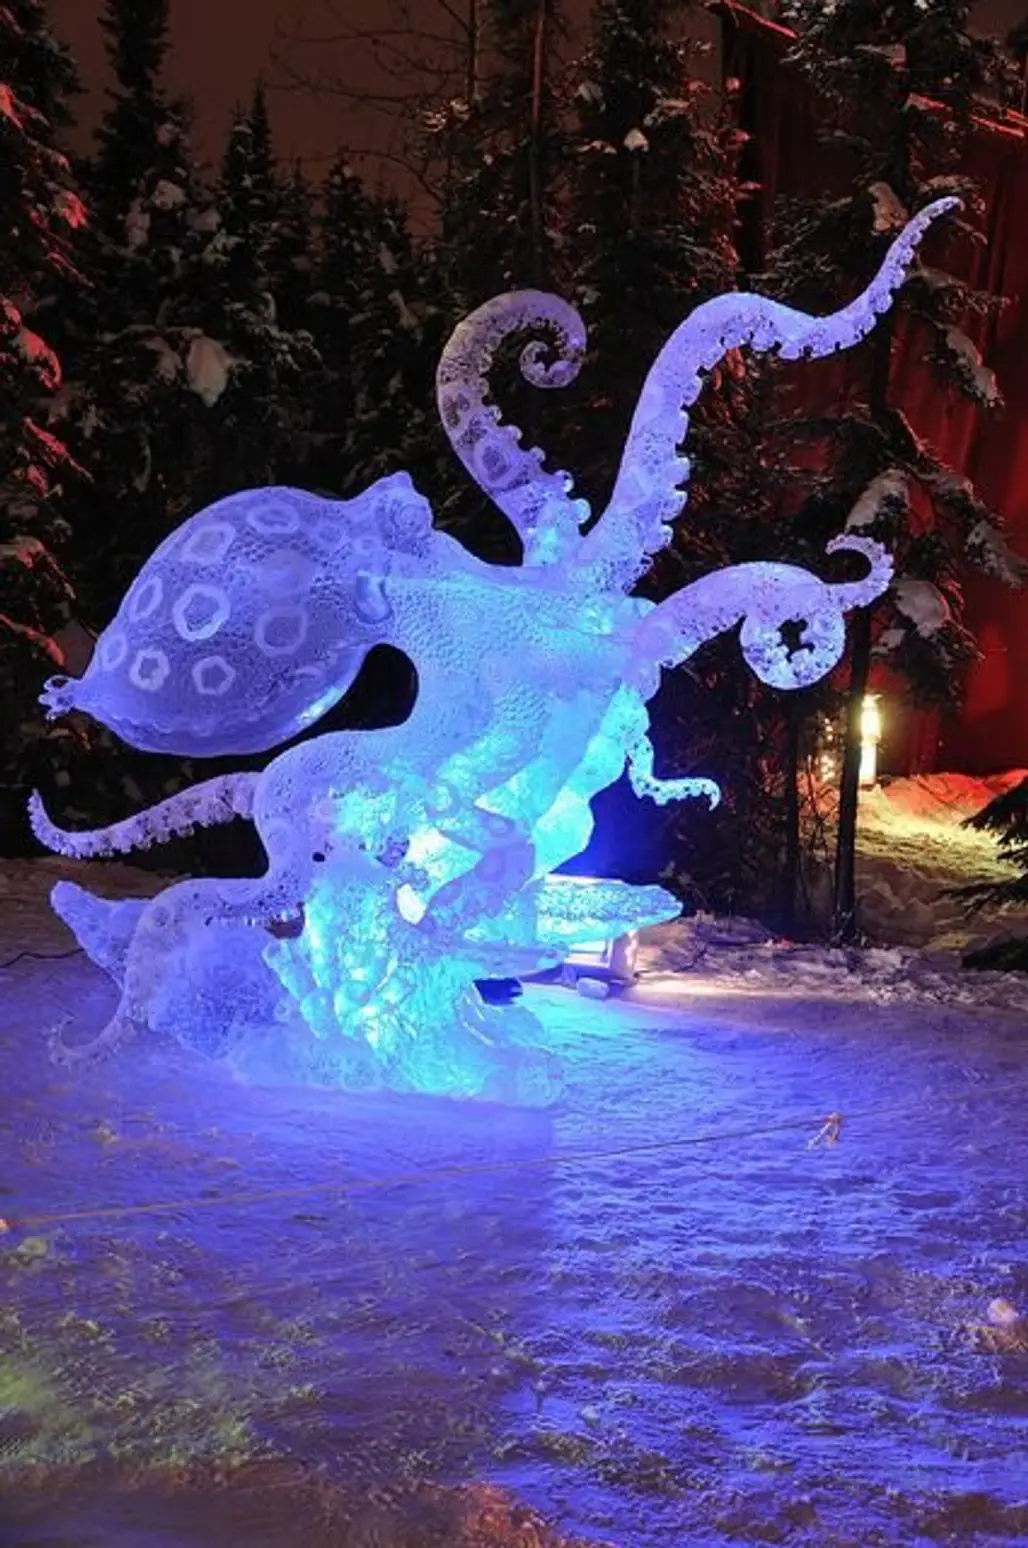 Gary Whitton. "Blue Ring Octopus" Ice Sculpture, 2010 World Ice Art Championships in Fairbanks, Alaska